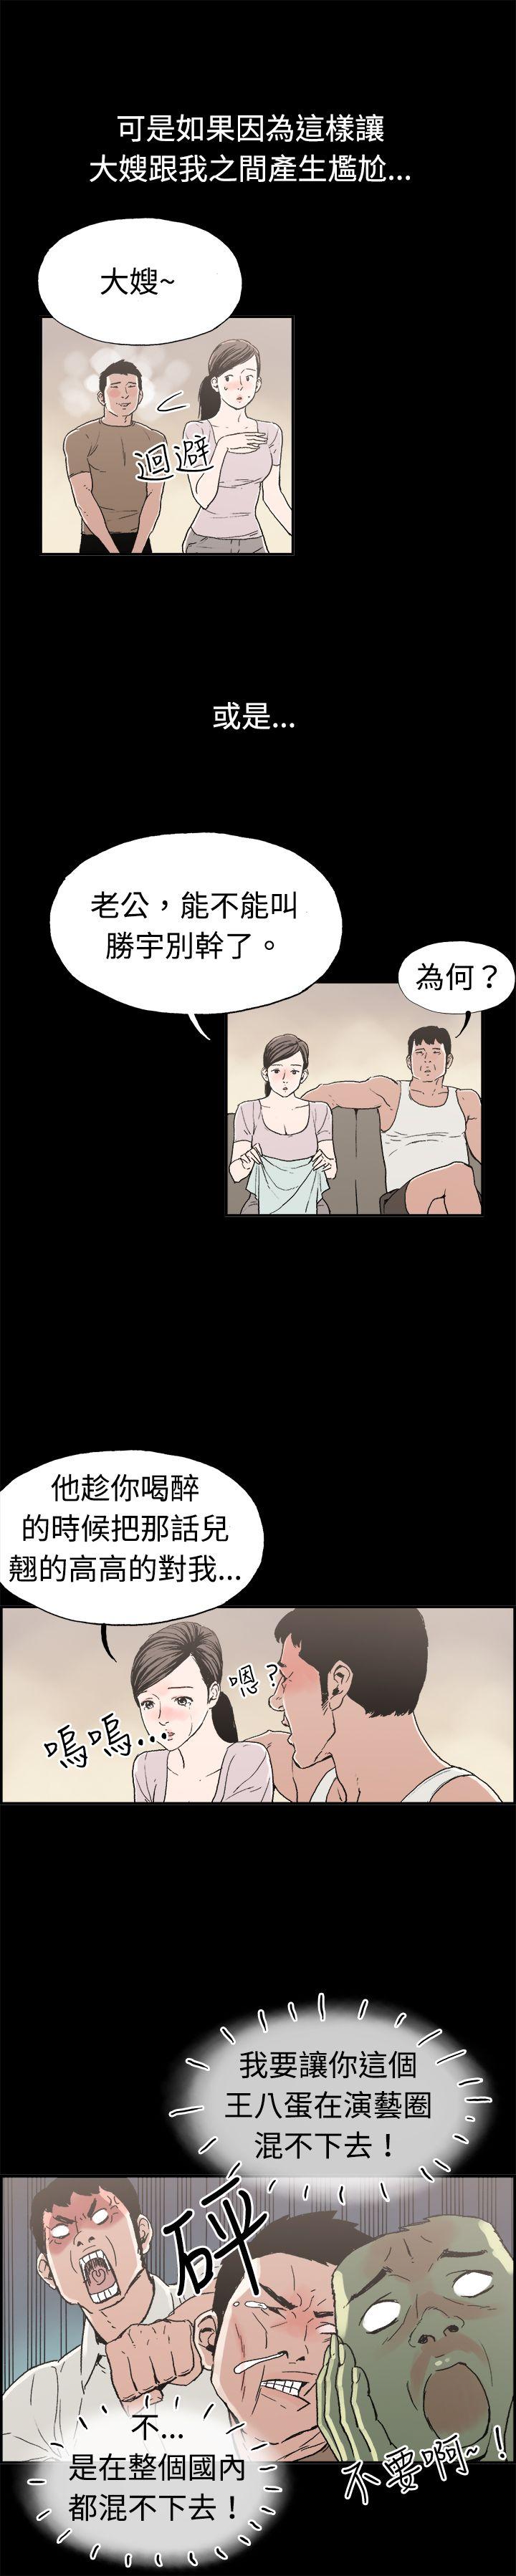 韩国污漫画 醜聞第二季 第11话贤淑的夫人 6